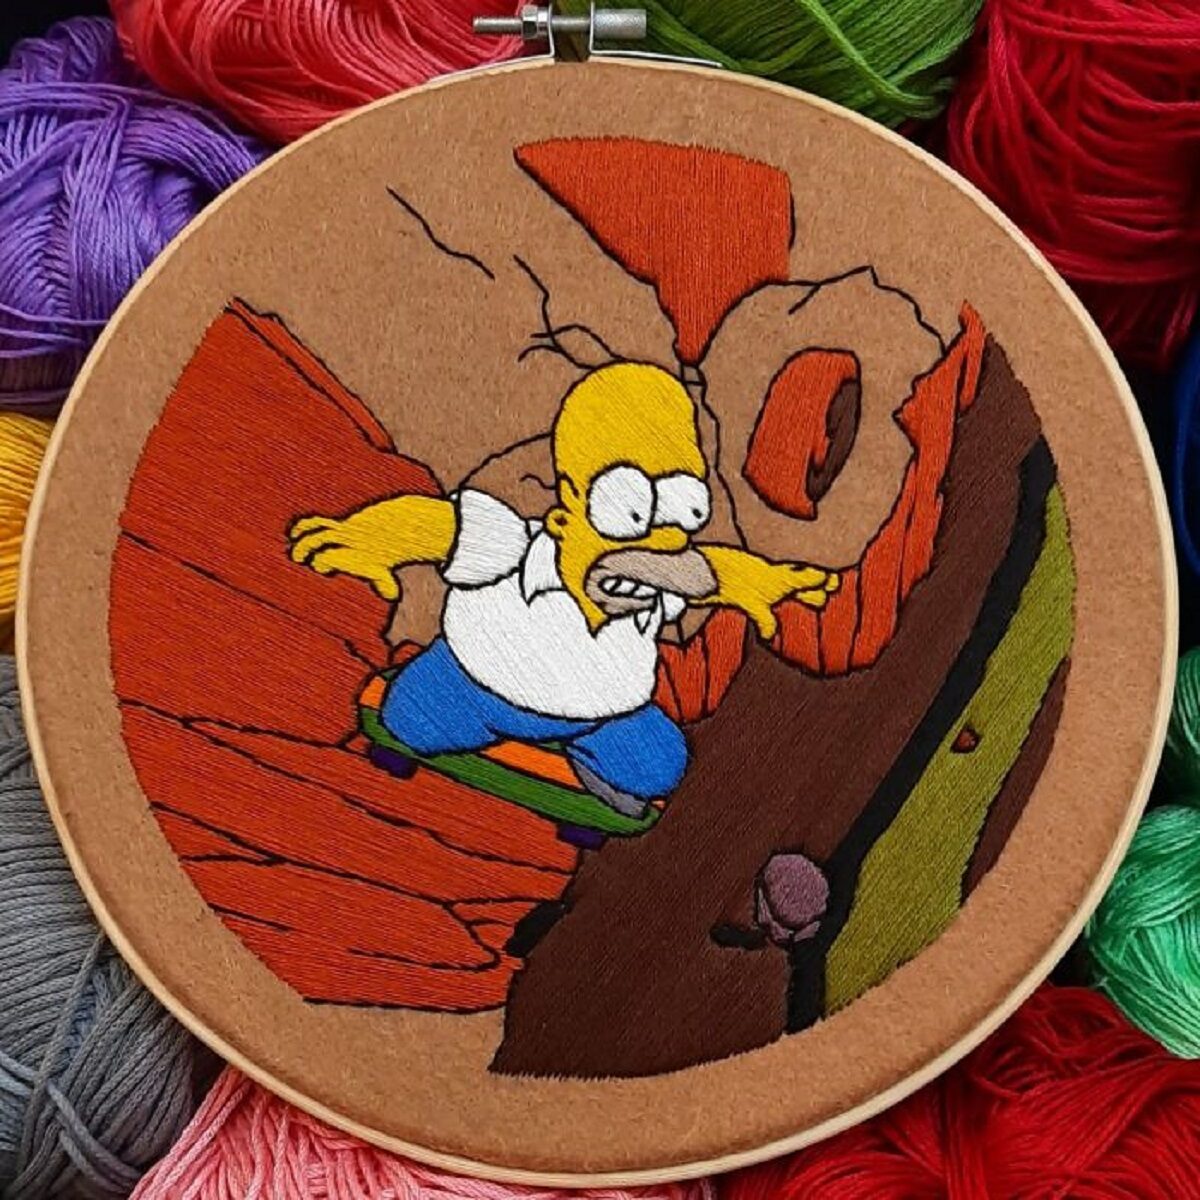 Artista Gabriela Martinez cria bordados de cenas de Os Simpsons 15